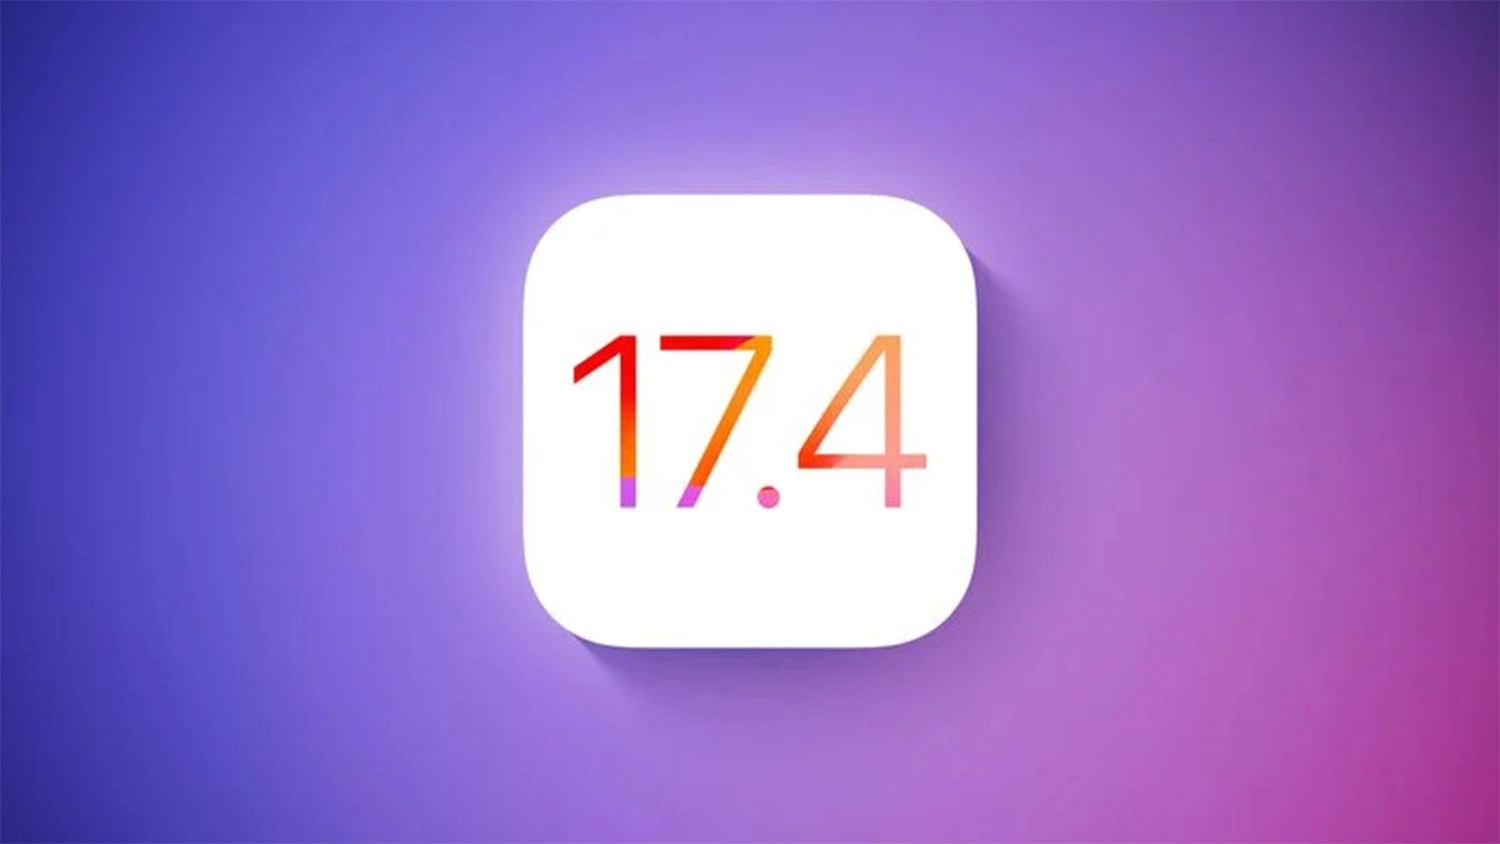 Apple xác nhận iOS 17.4 sẽ được phát hành vào tháng 3